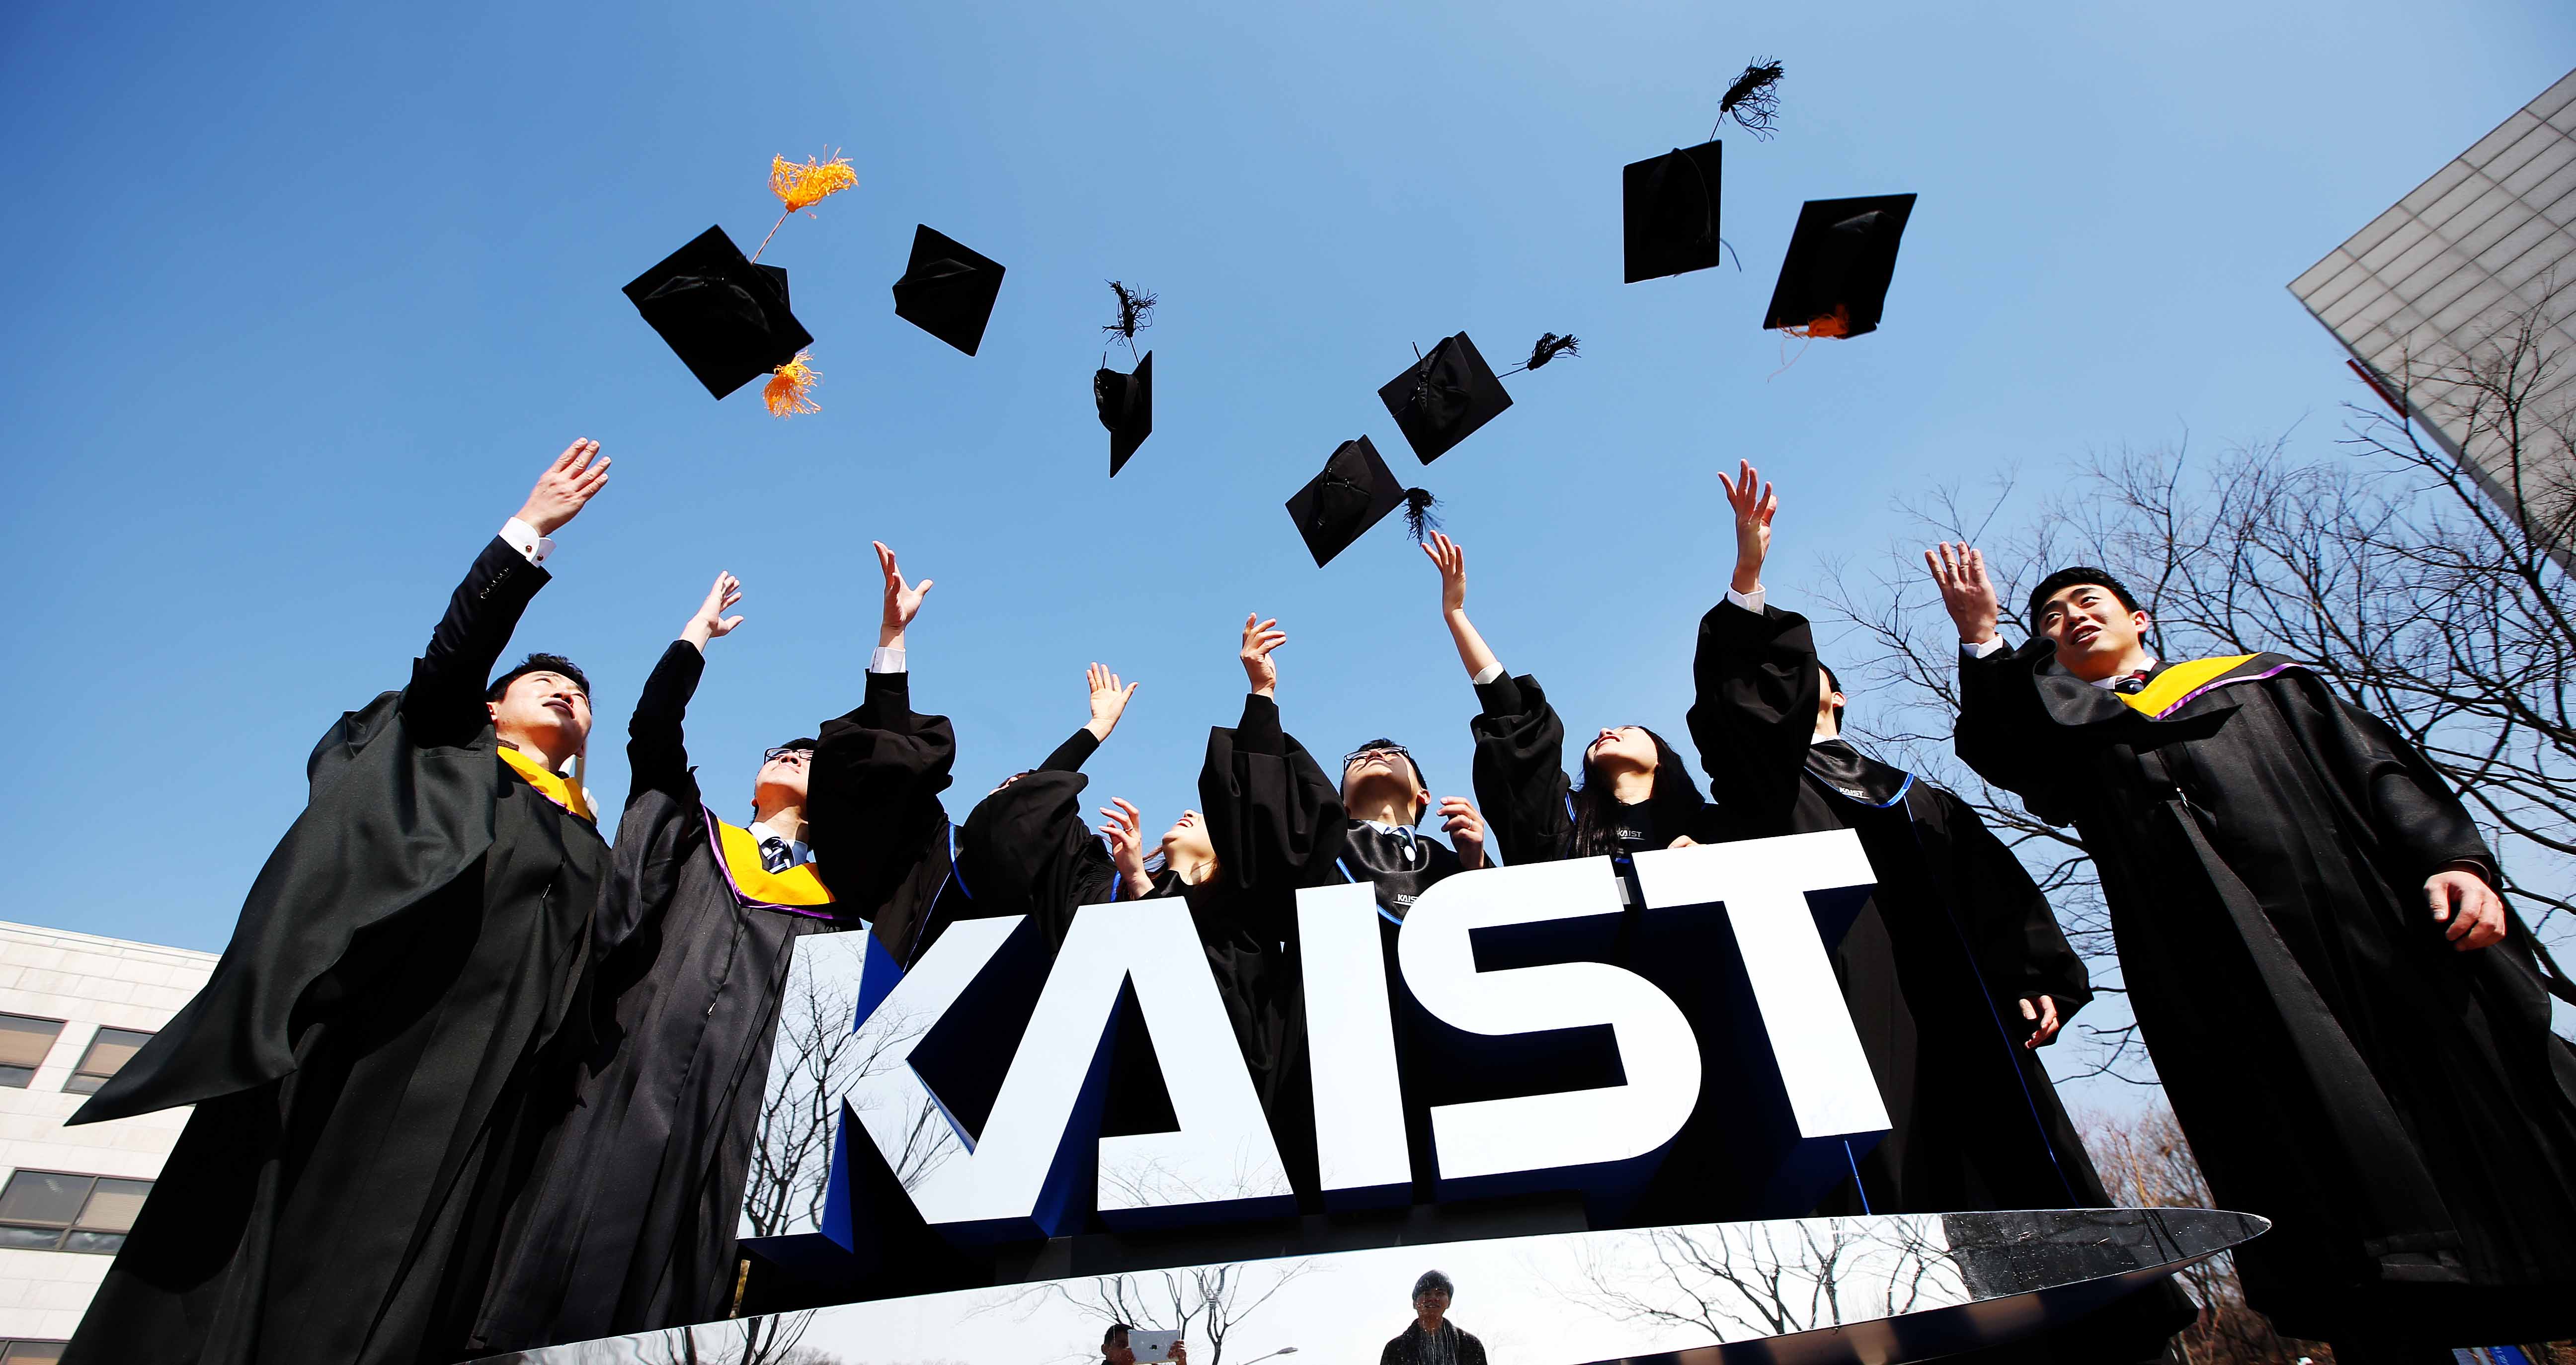 University kaist KAIST International